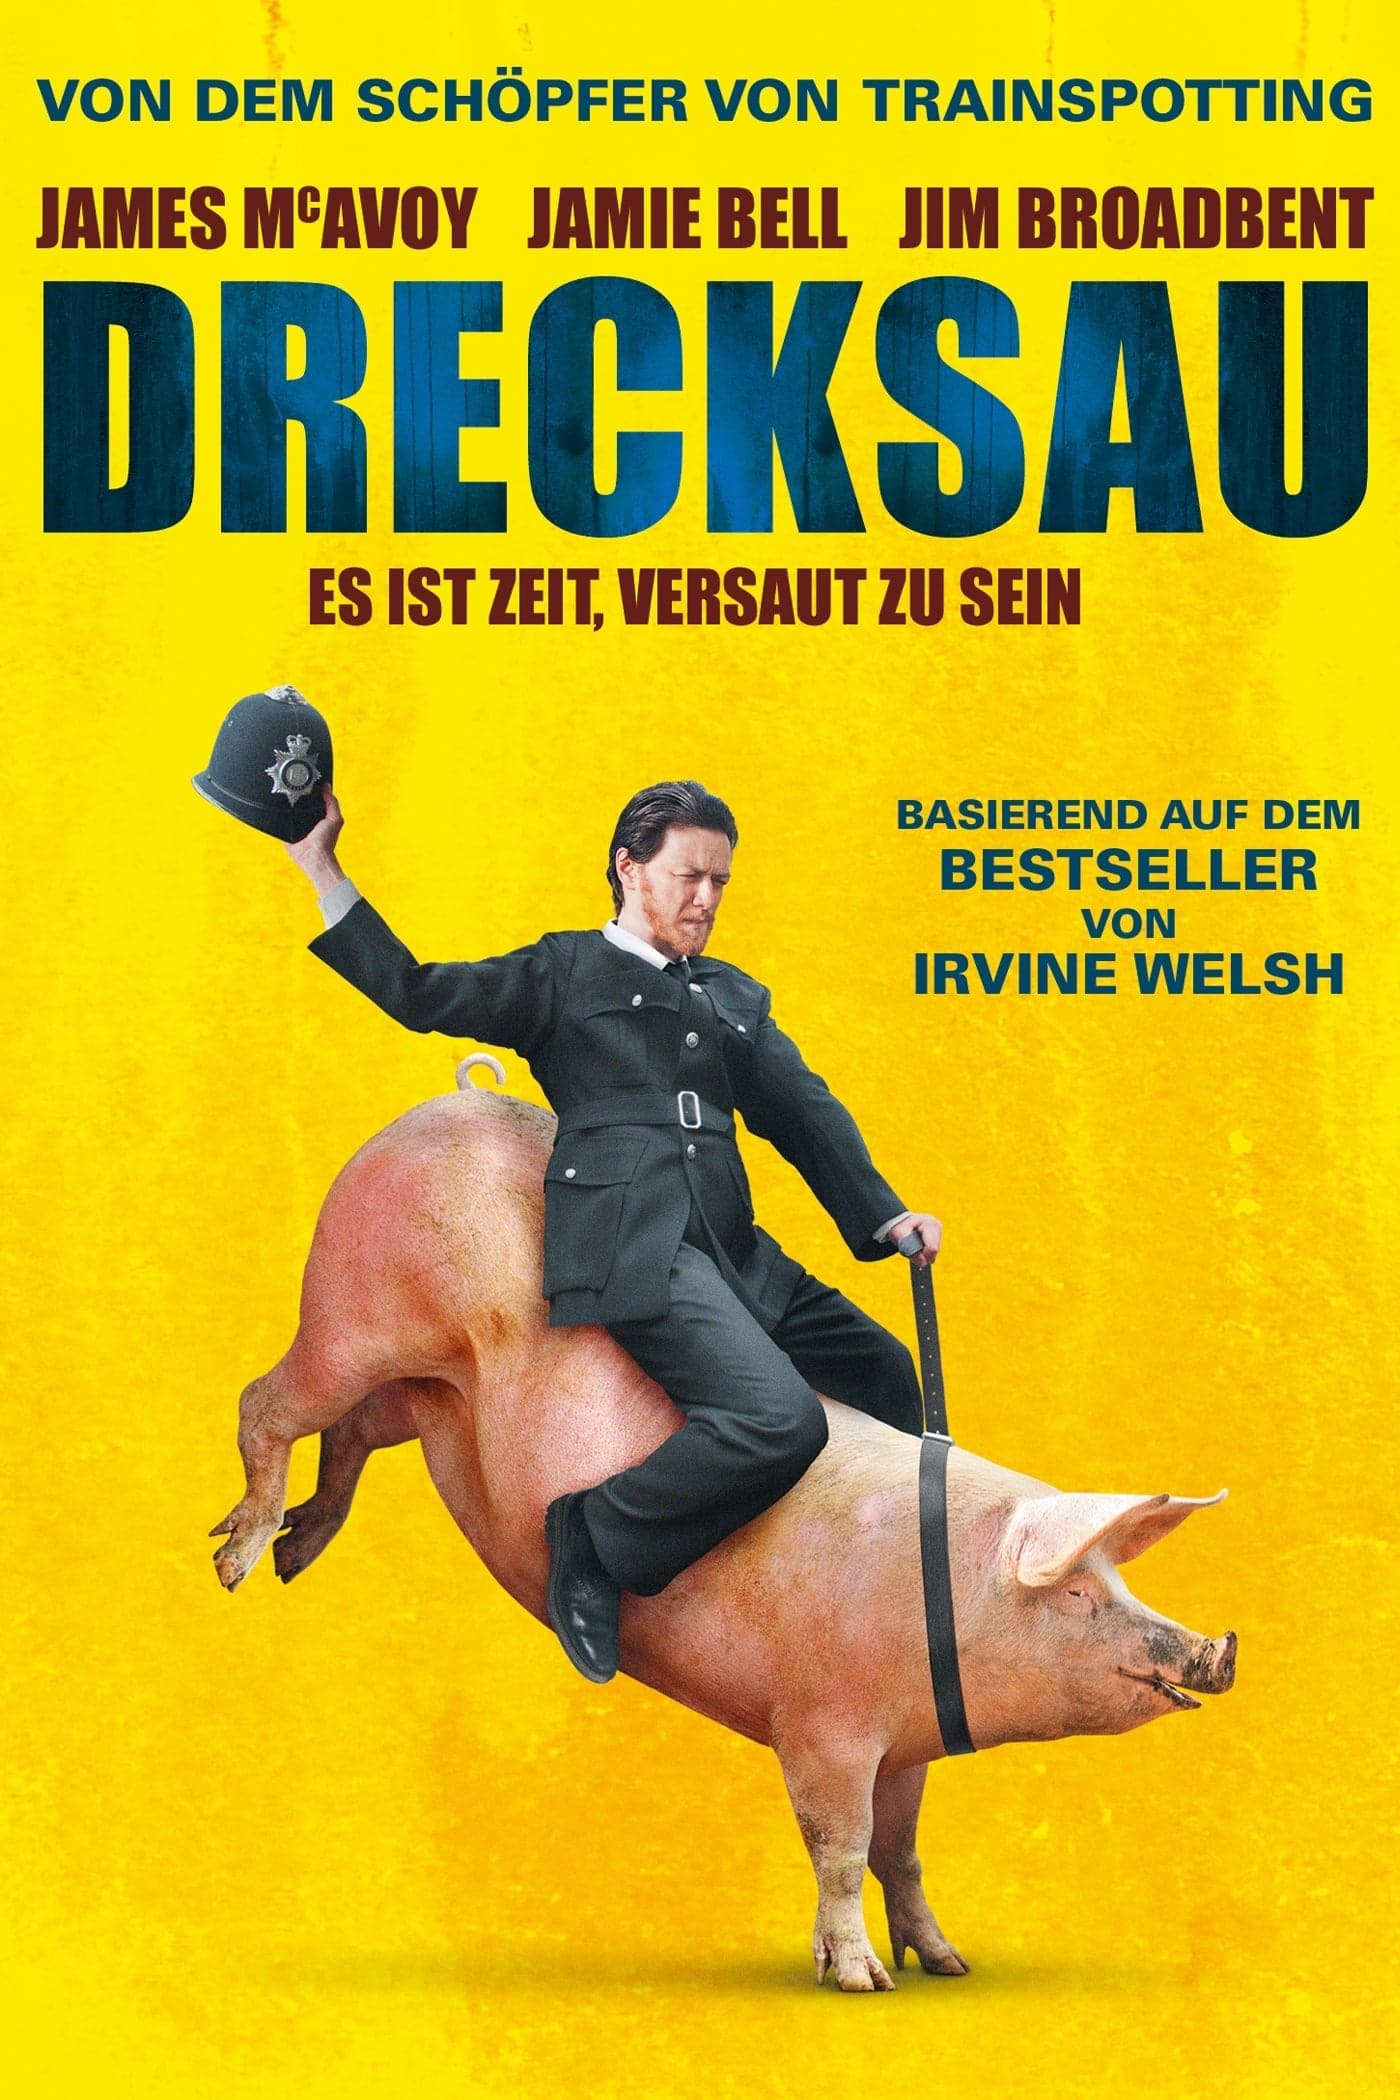 Plakat von "Drecksau"